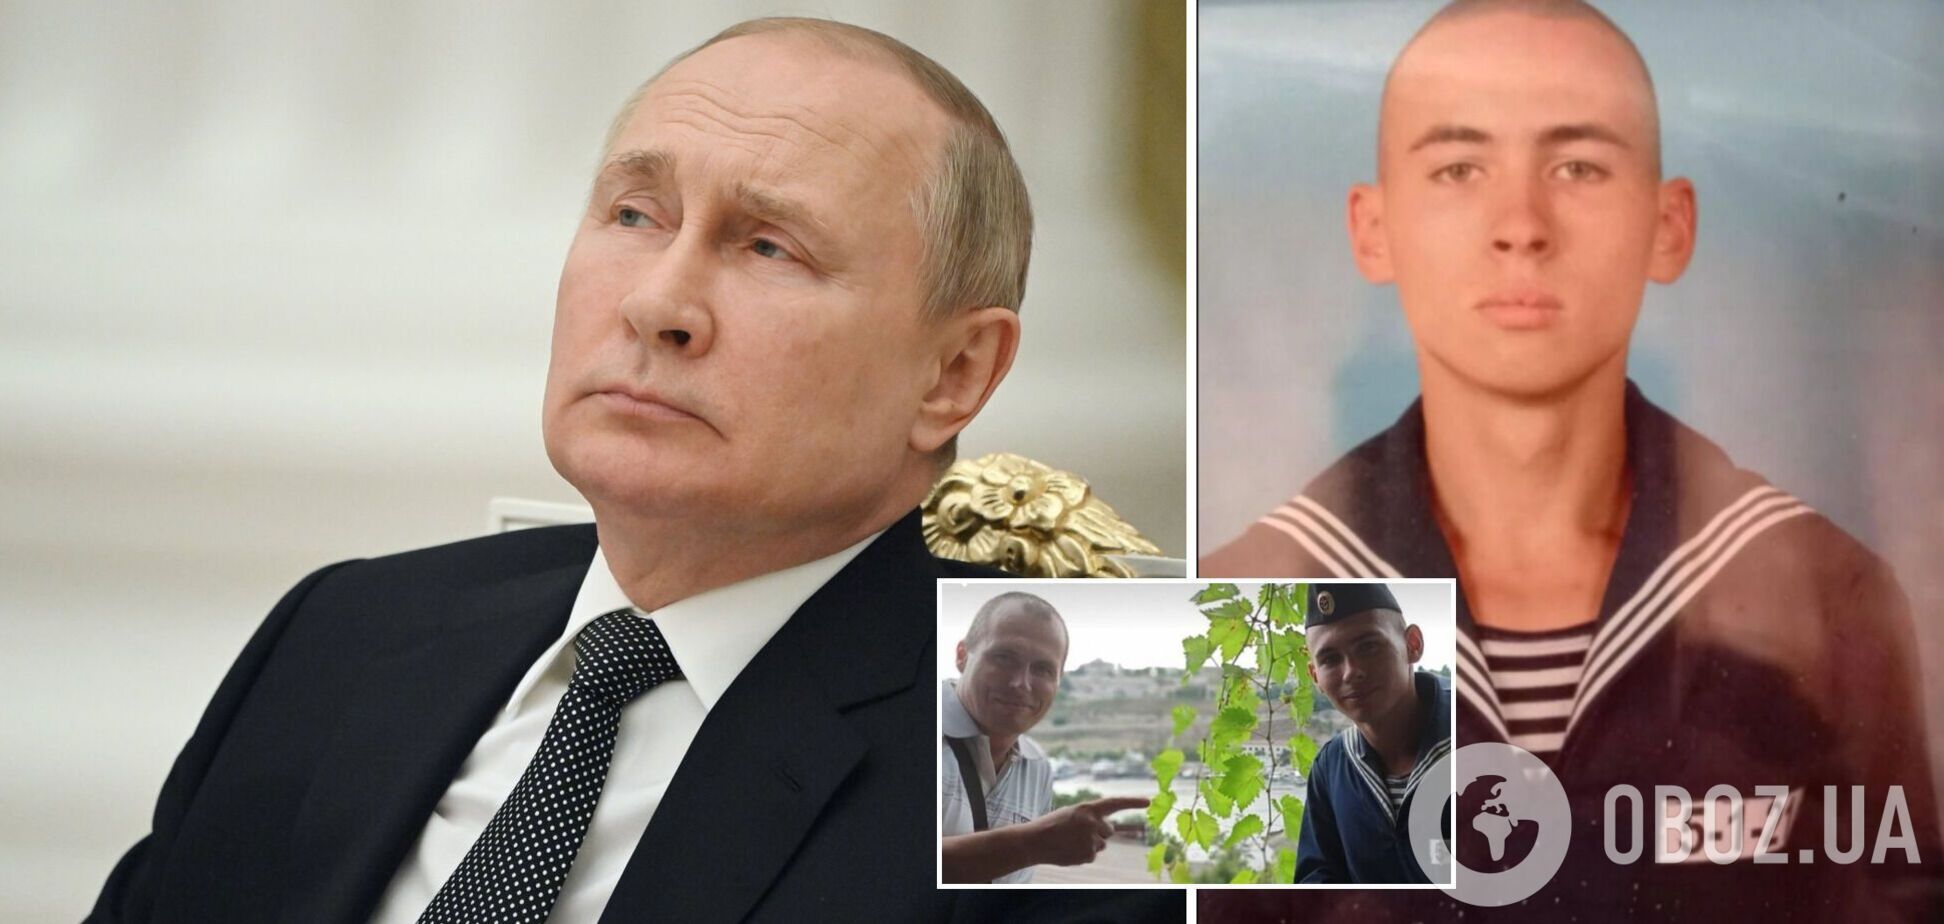 Отец погибшего на 'Москве' срочника обозвал Путина ублюдком, но заявил о готовности воевать против ВСУ